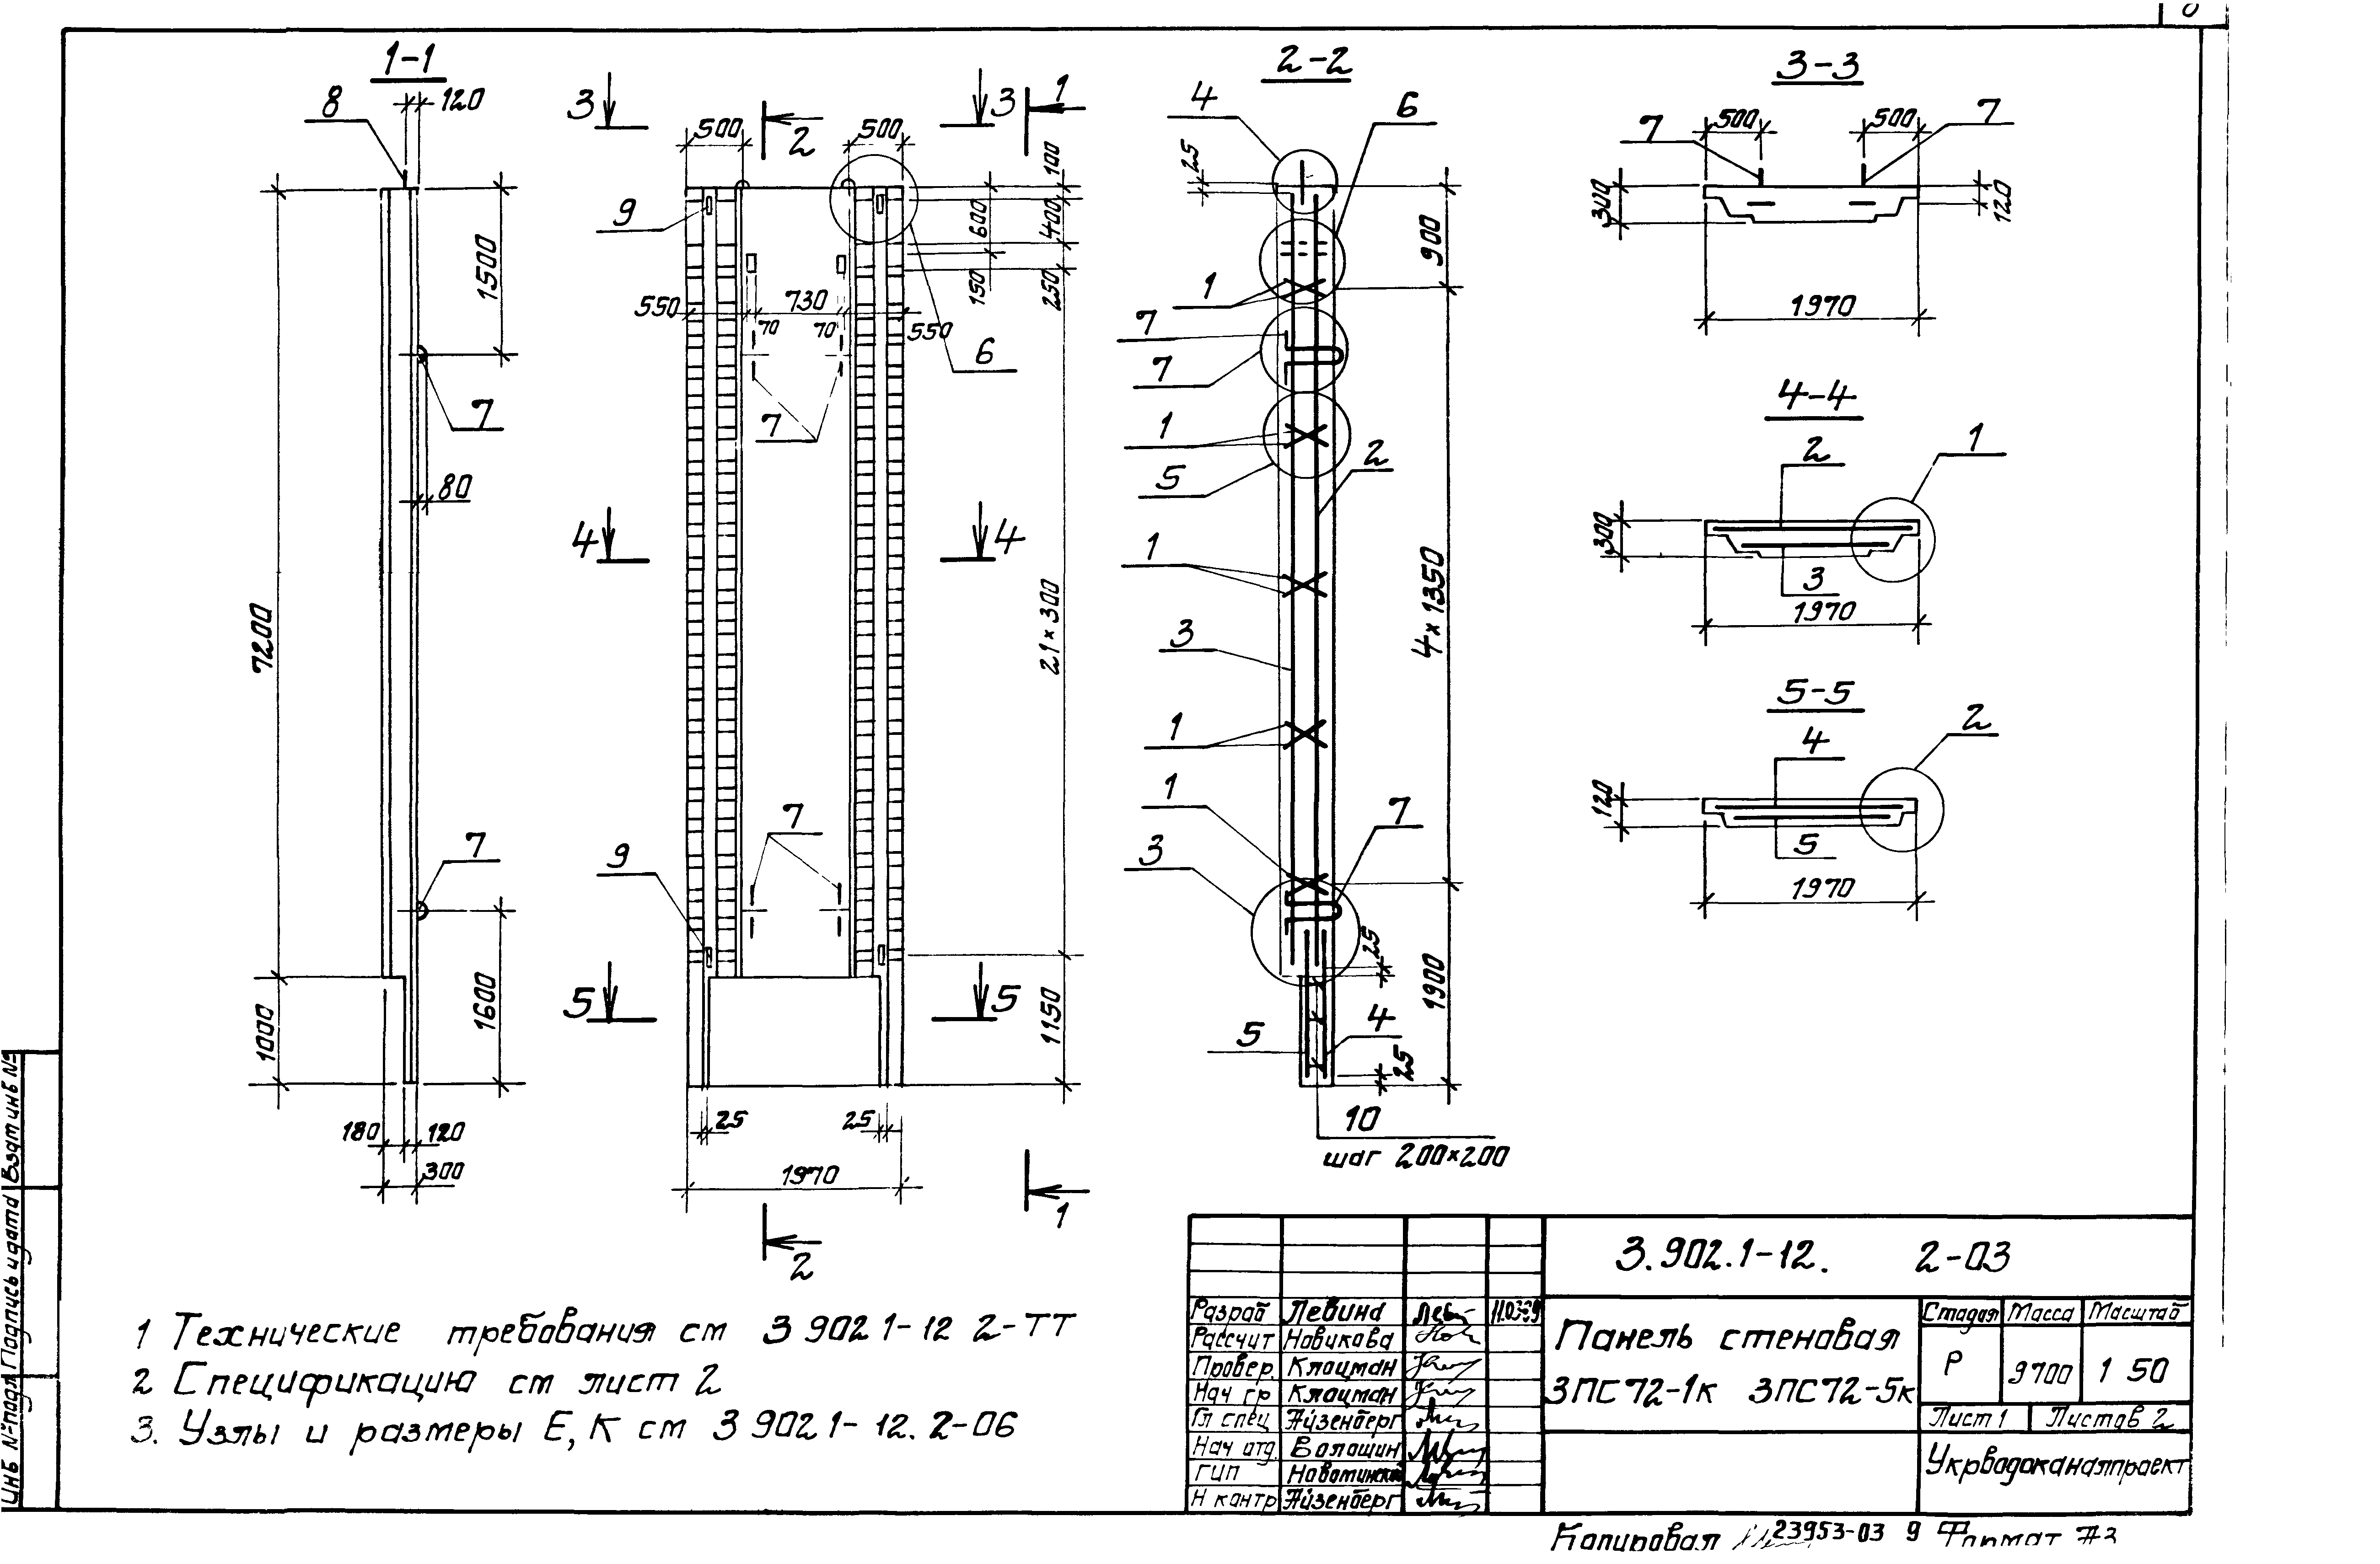 Панель стеновая 3ПС72-4к Серия 3.902.1-12, вып.2